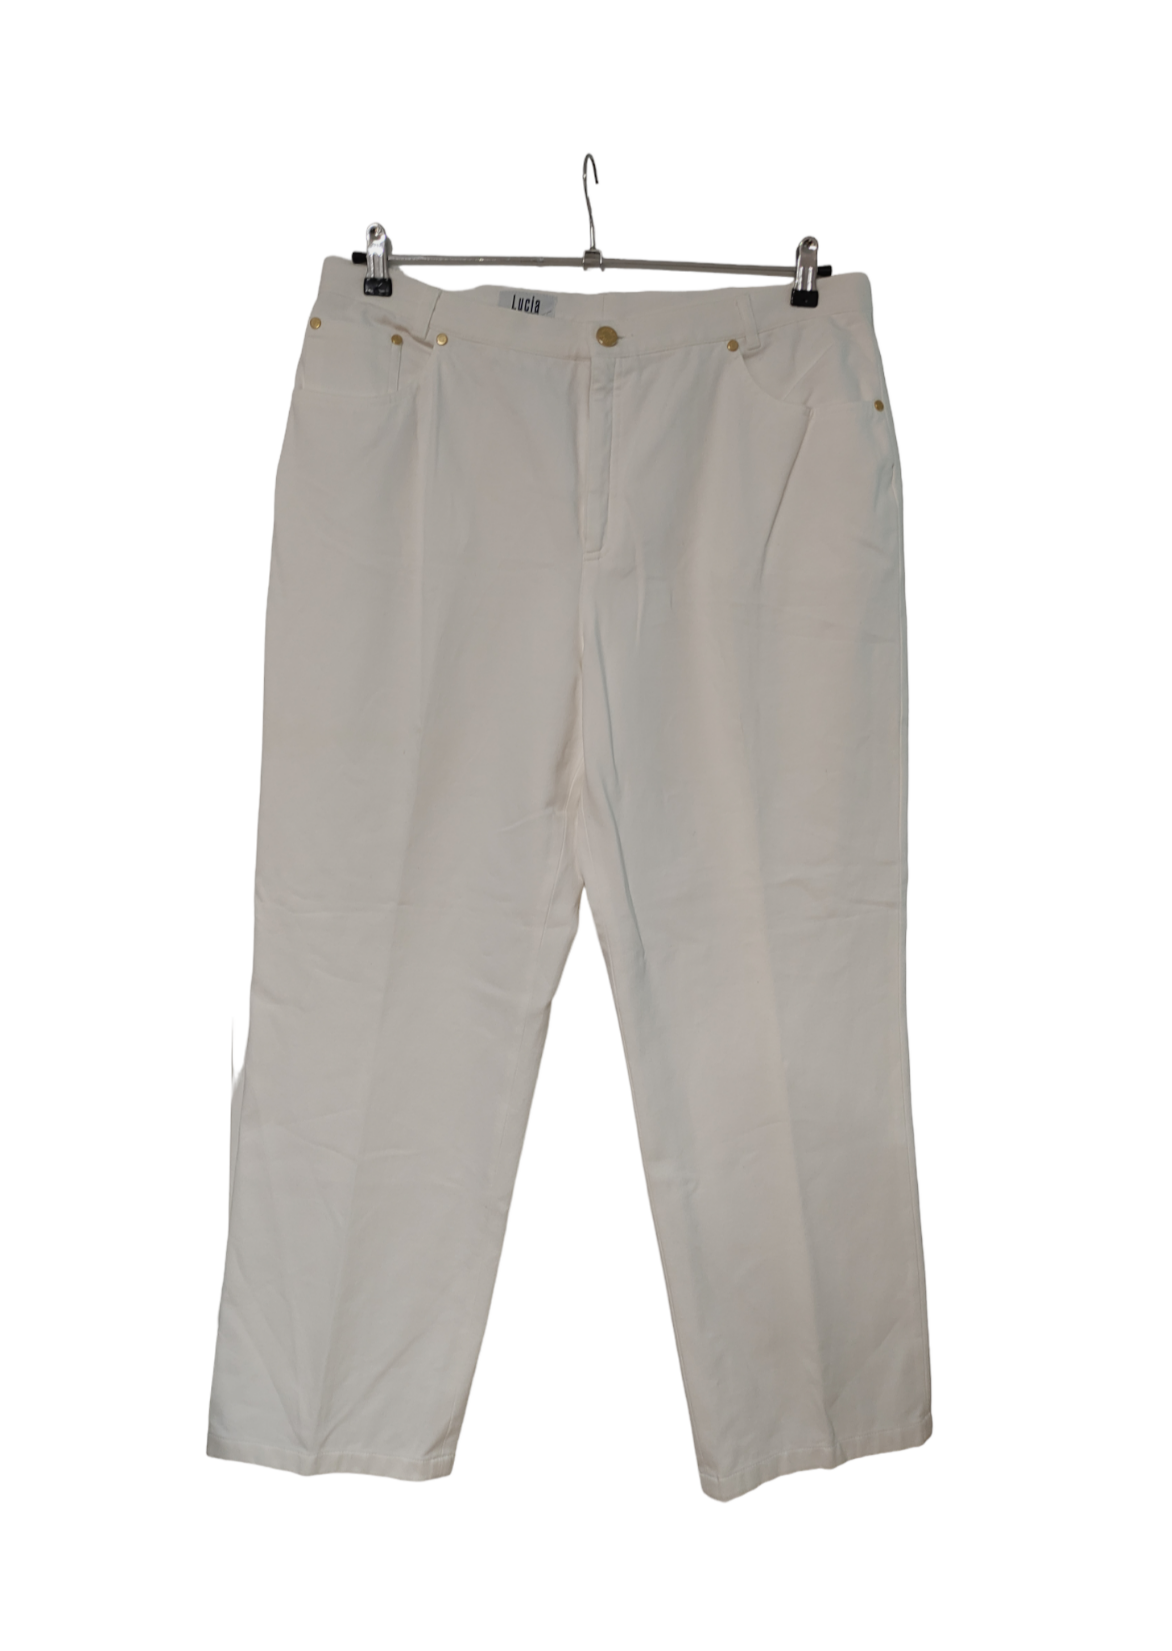 Ανοιξιάτικο Γυναικείο Παντελόνι LUCIA SPORTS σε Λευκό χρώμα (XL/2XL)